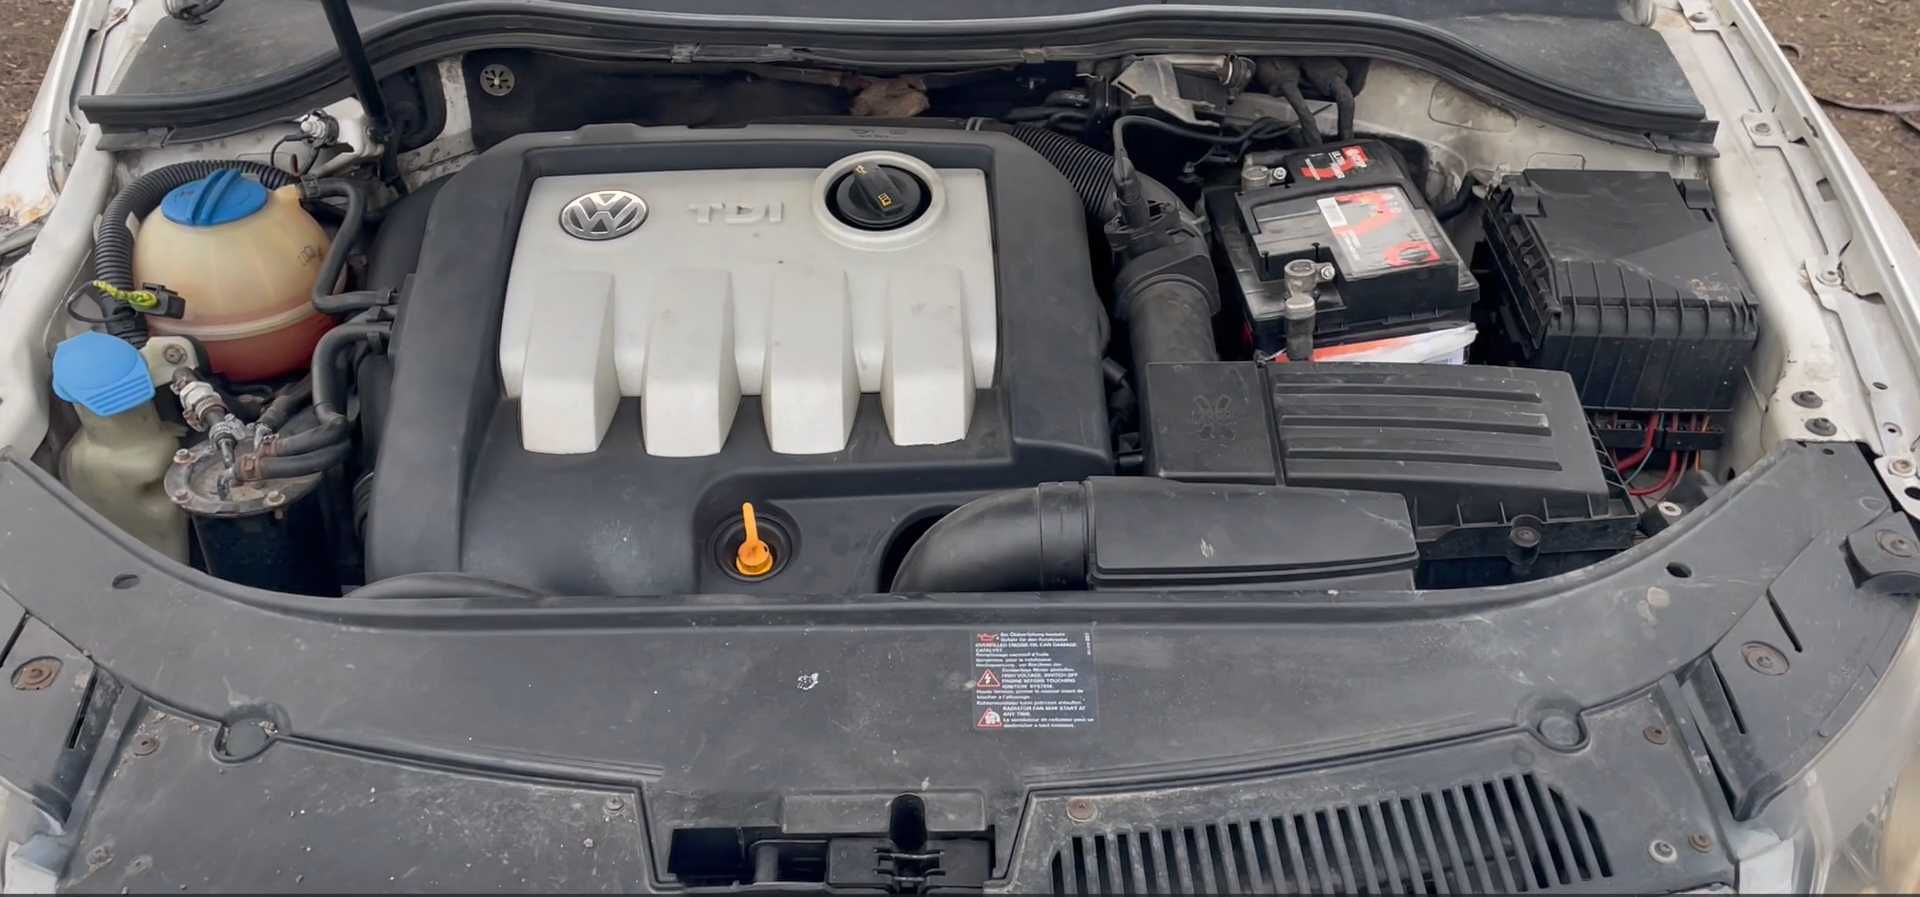 Piese VW Passat B6 oglinda ventilator modul fuzeta egr caseta directie